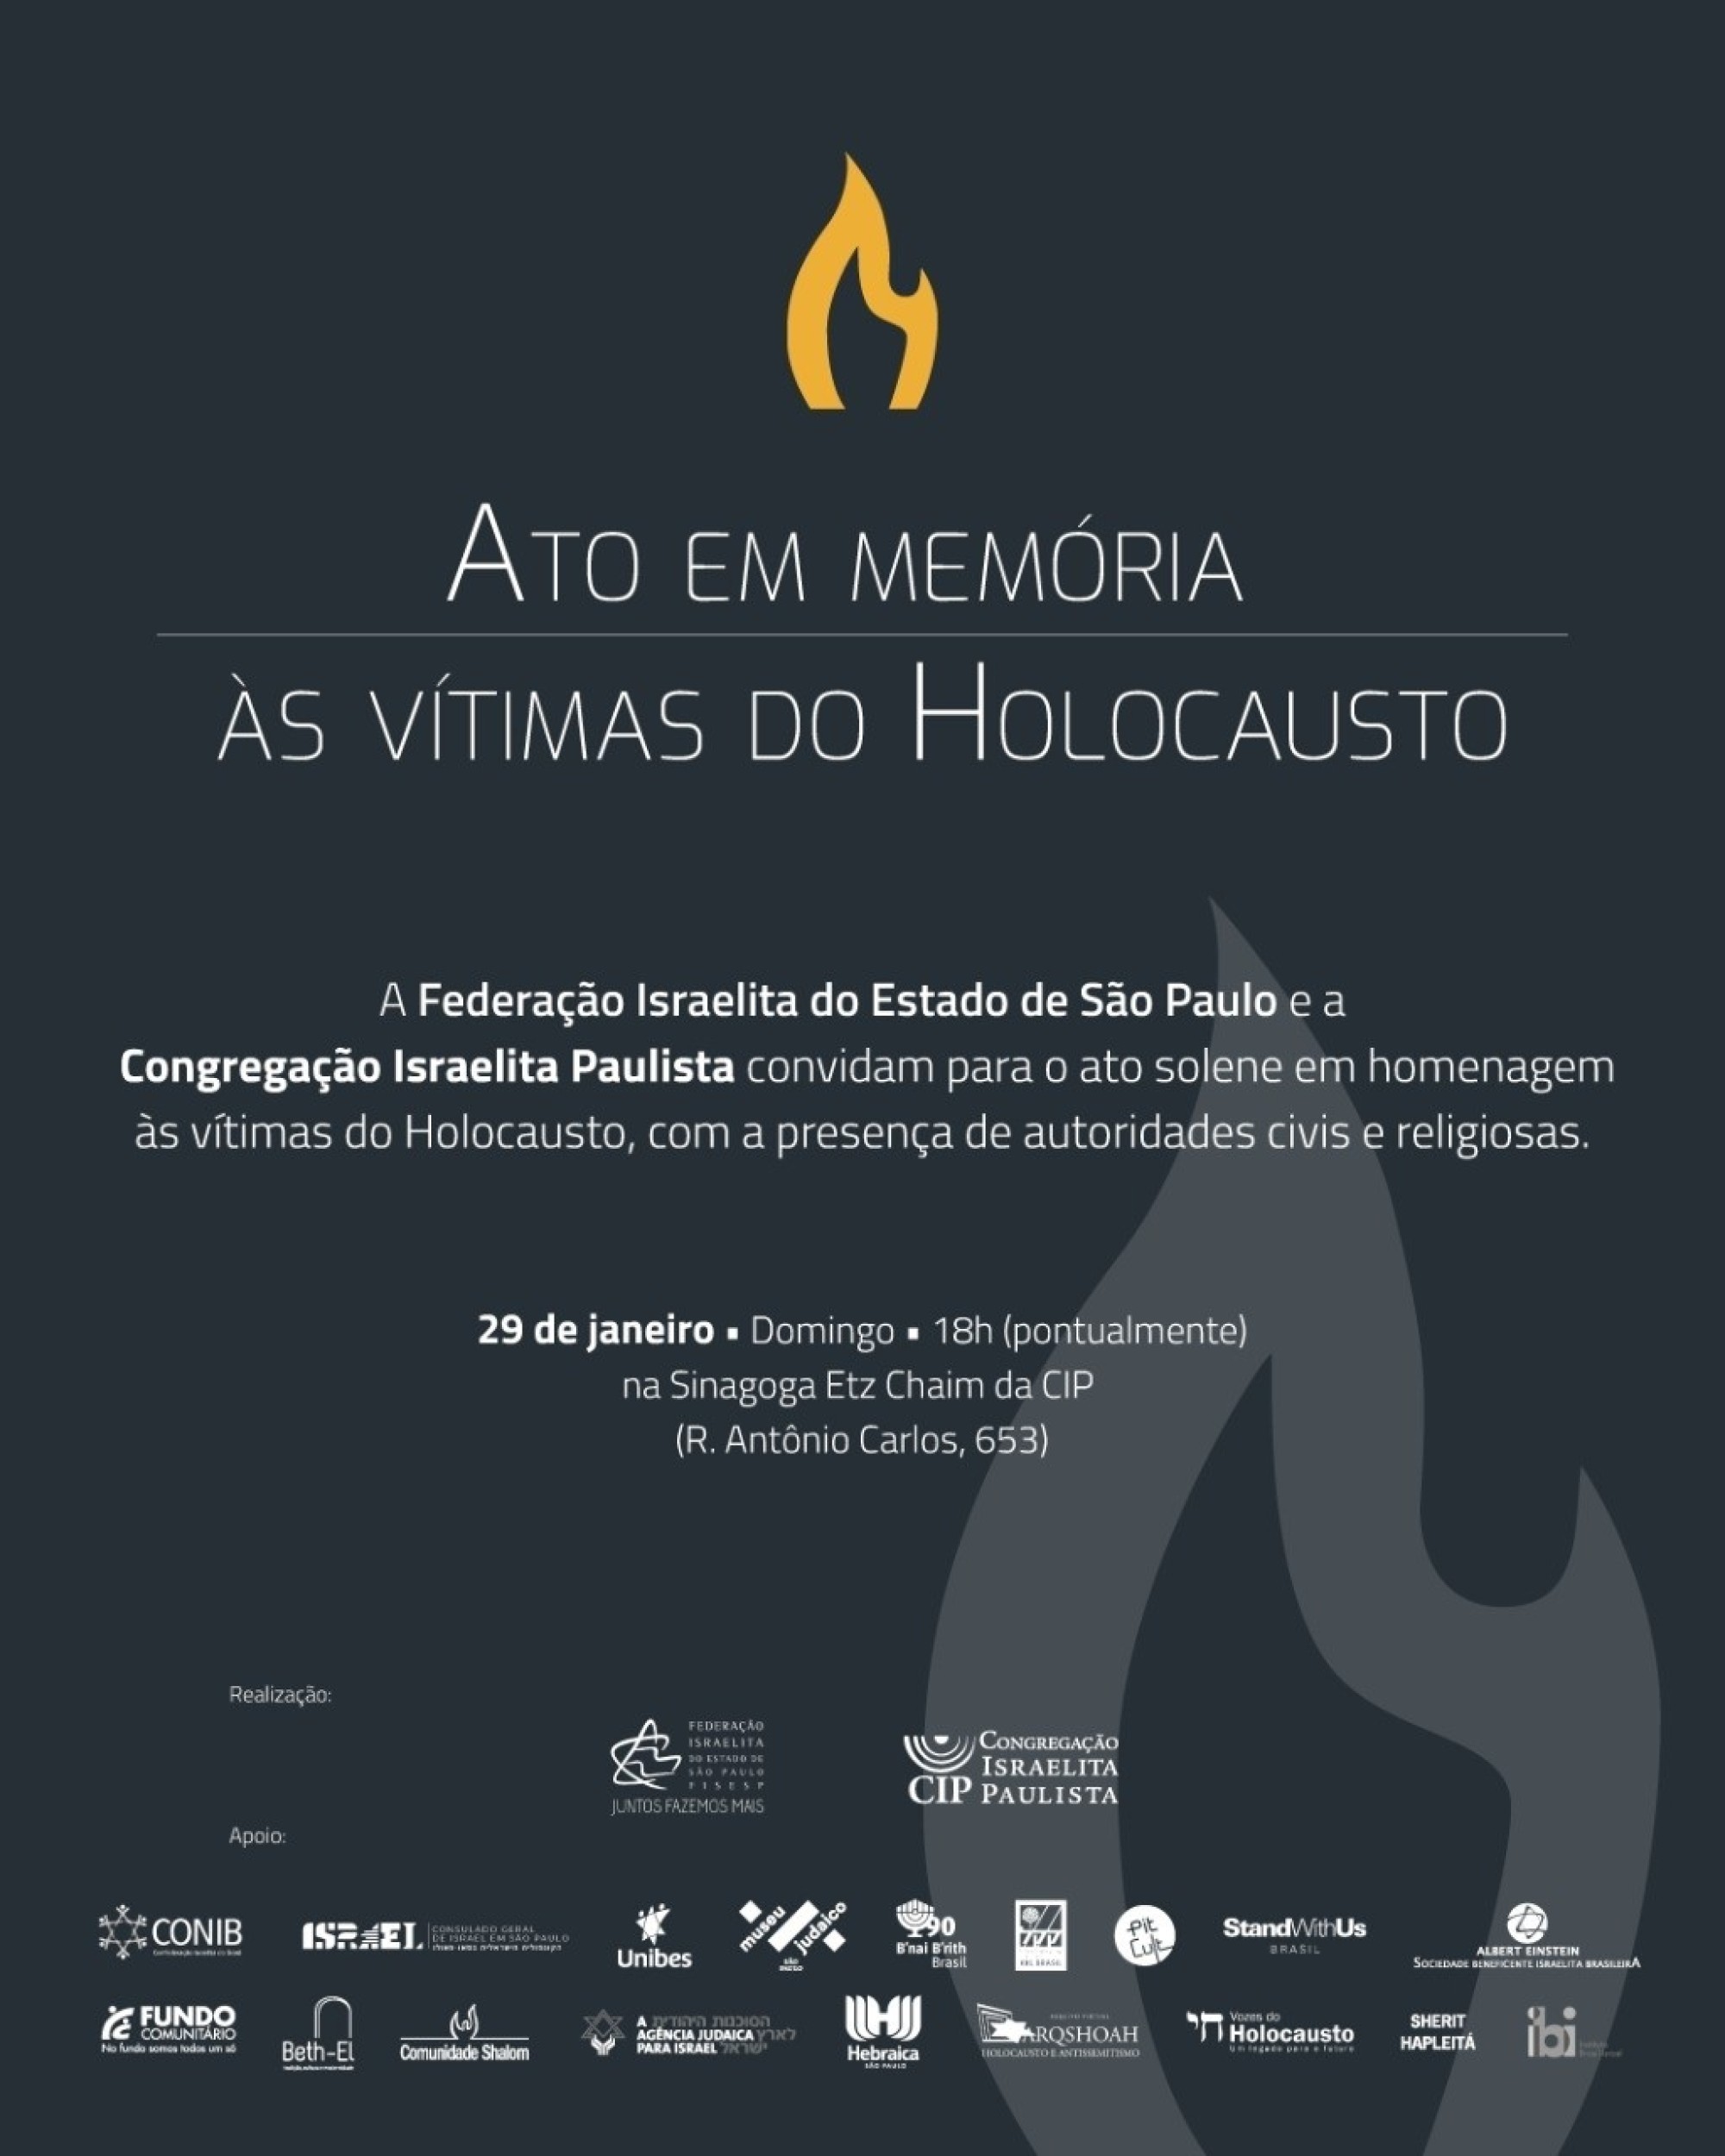 Ato em São Paulo inclui exposição que retrata a fome nos campos de concentração - Fundada em 1948, a CONIB – Confederação Israelita do Brasil é o órgão de representação e coordenação política da comunidade judaica brasileira. 